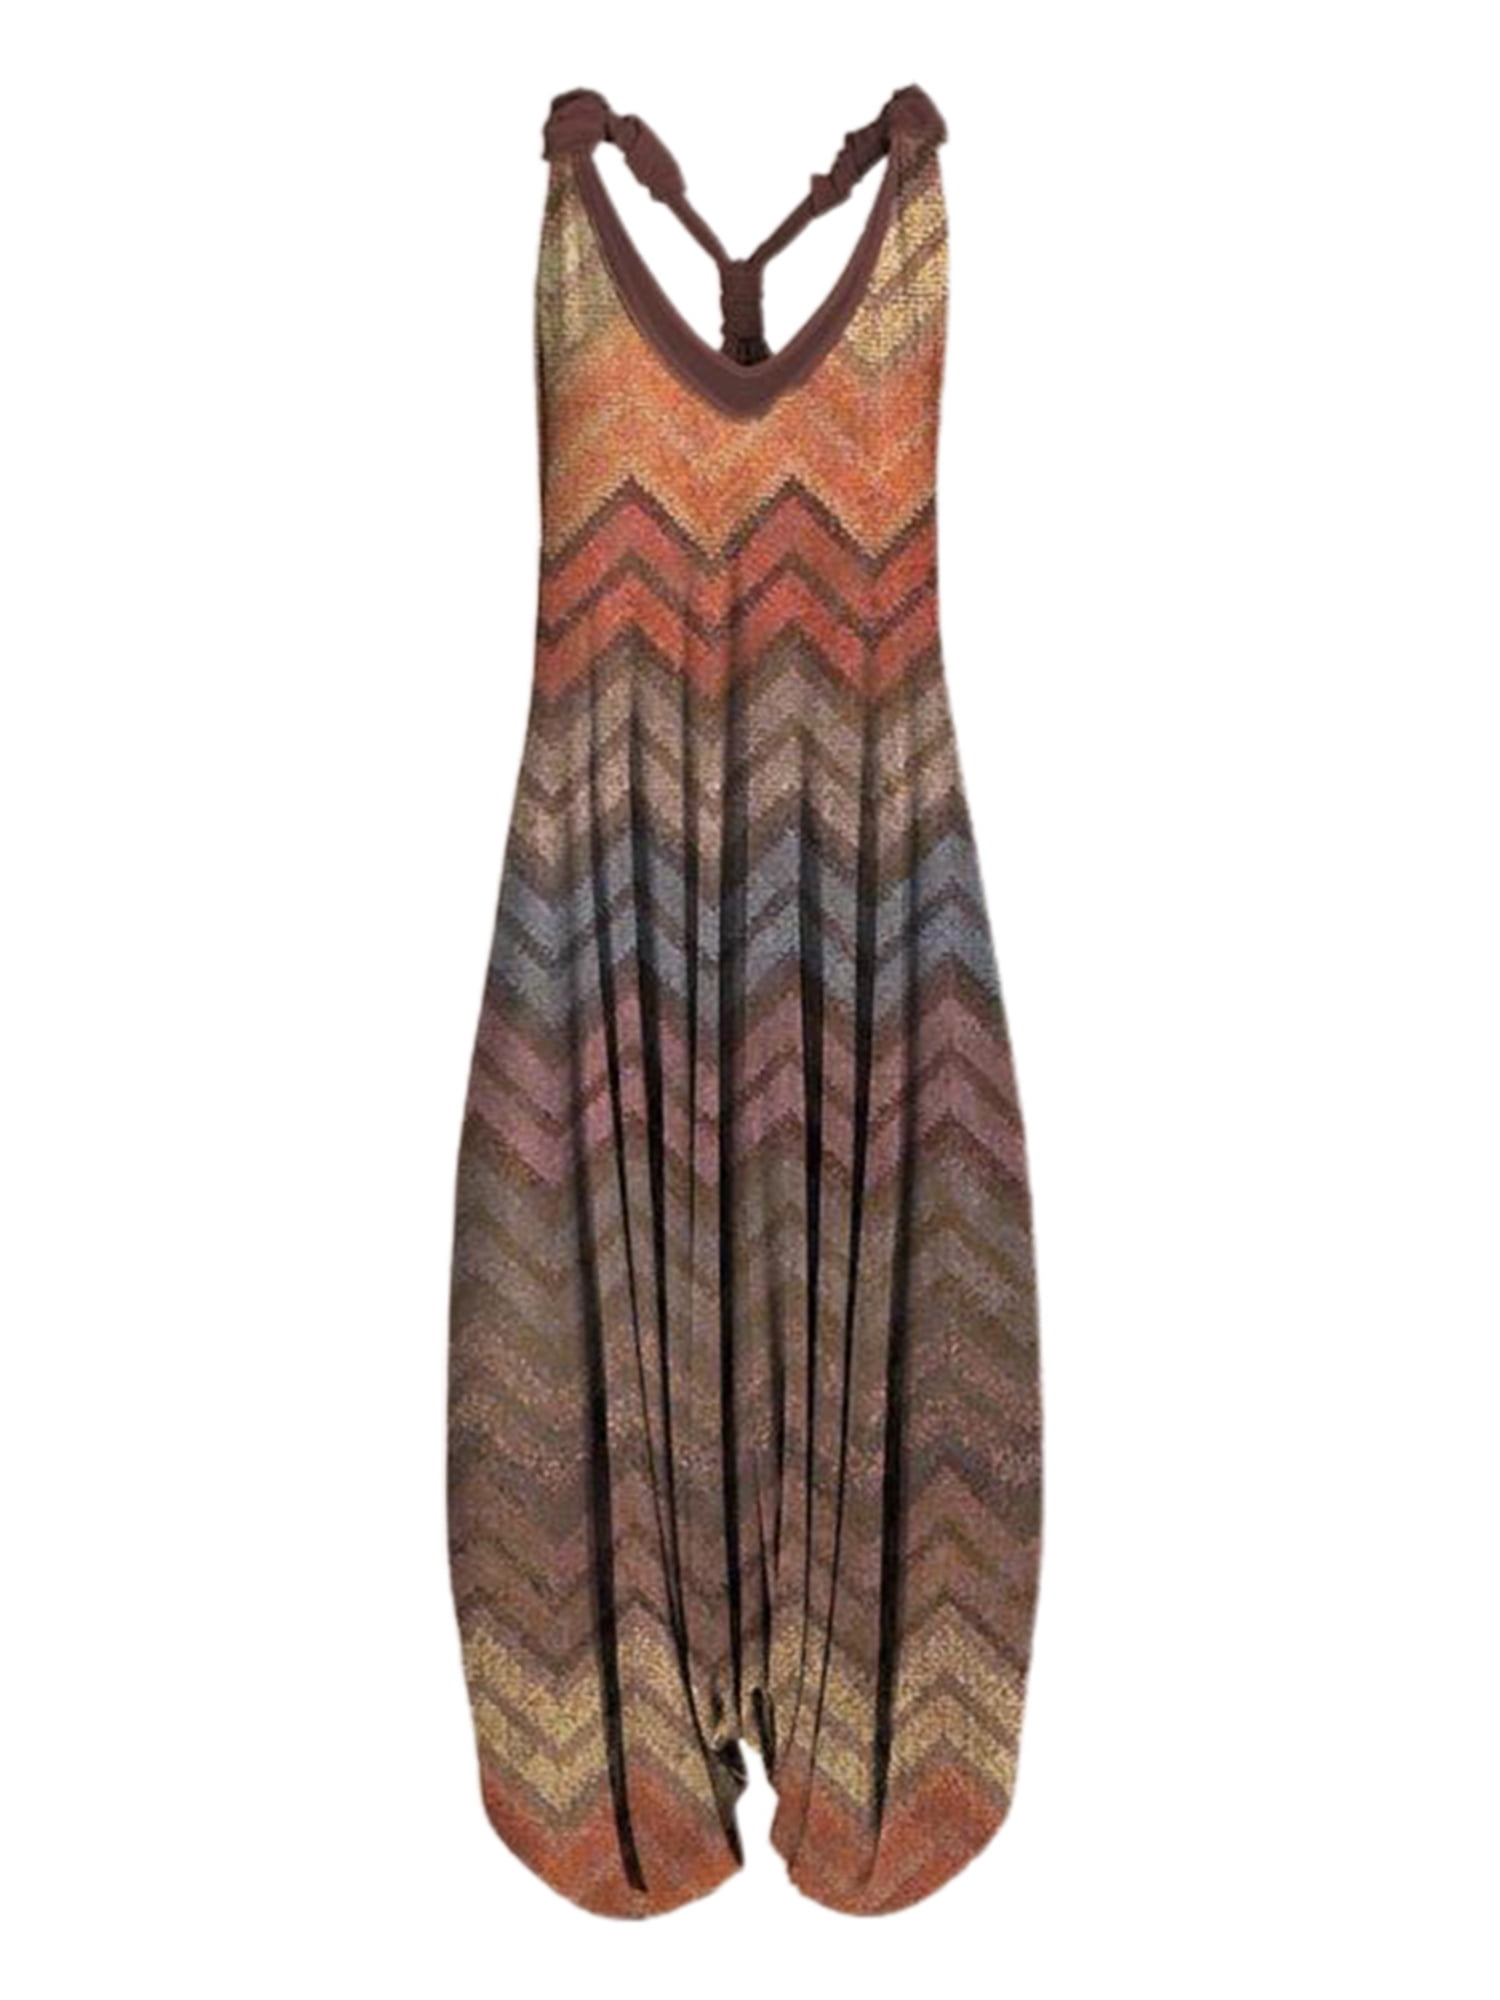 LADIES JUMPSUIT LAGENLOOK Strappy Baggy Harem Dress Top Playsuit Cami SIZE  8 20 £14.93 - PicClick UK